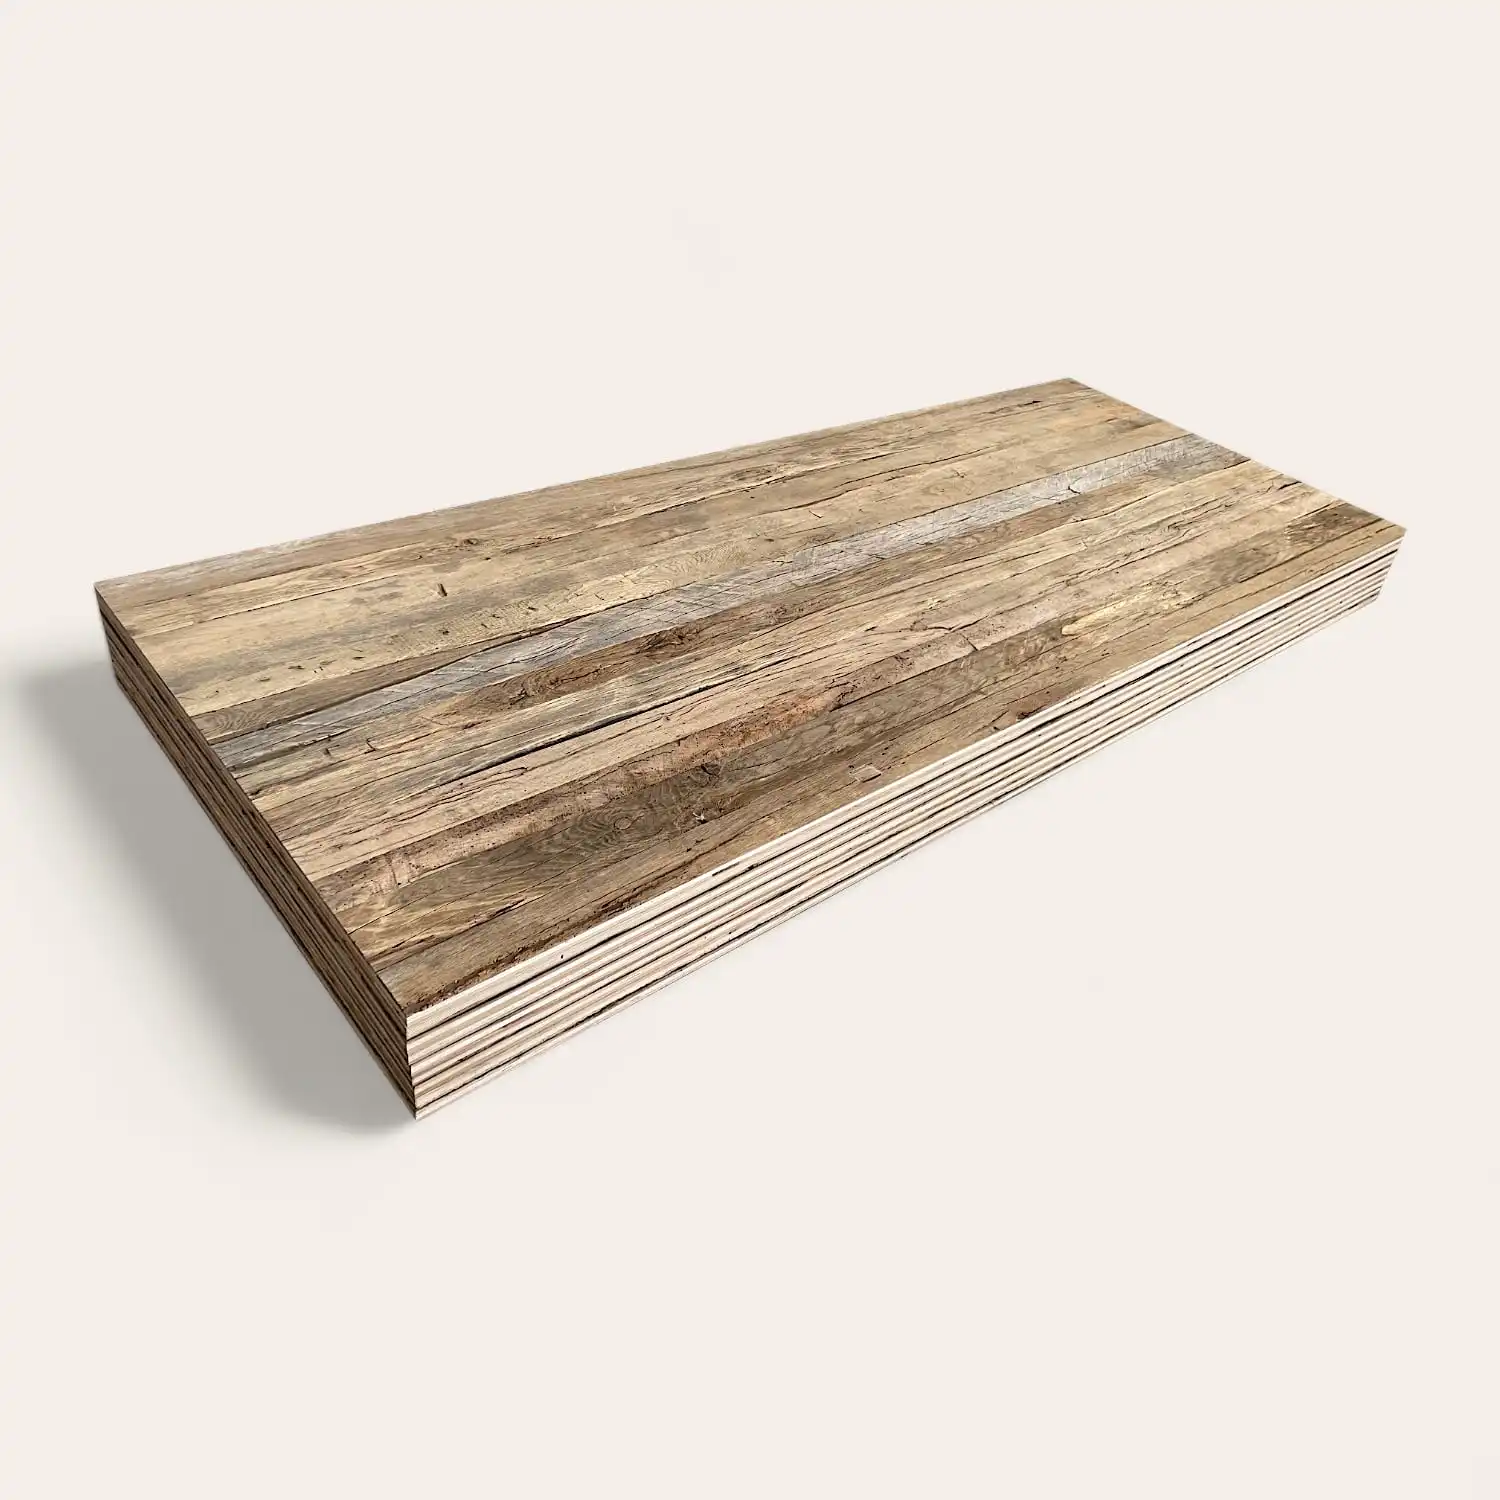  Une pile de planches de bois patinées isolées sur un fond blanc. 